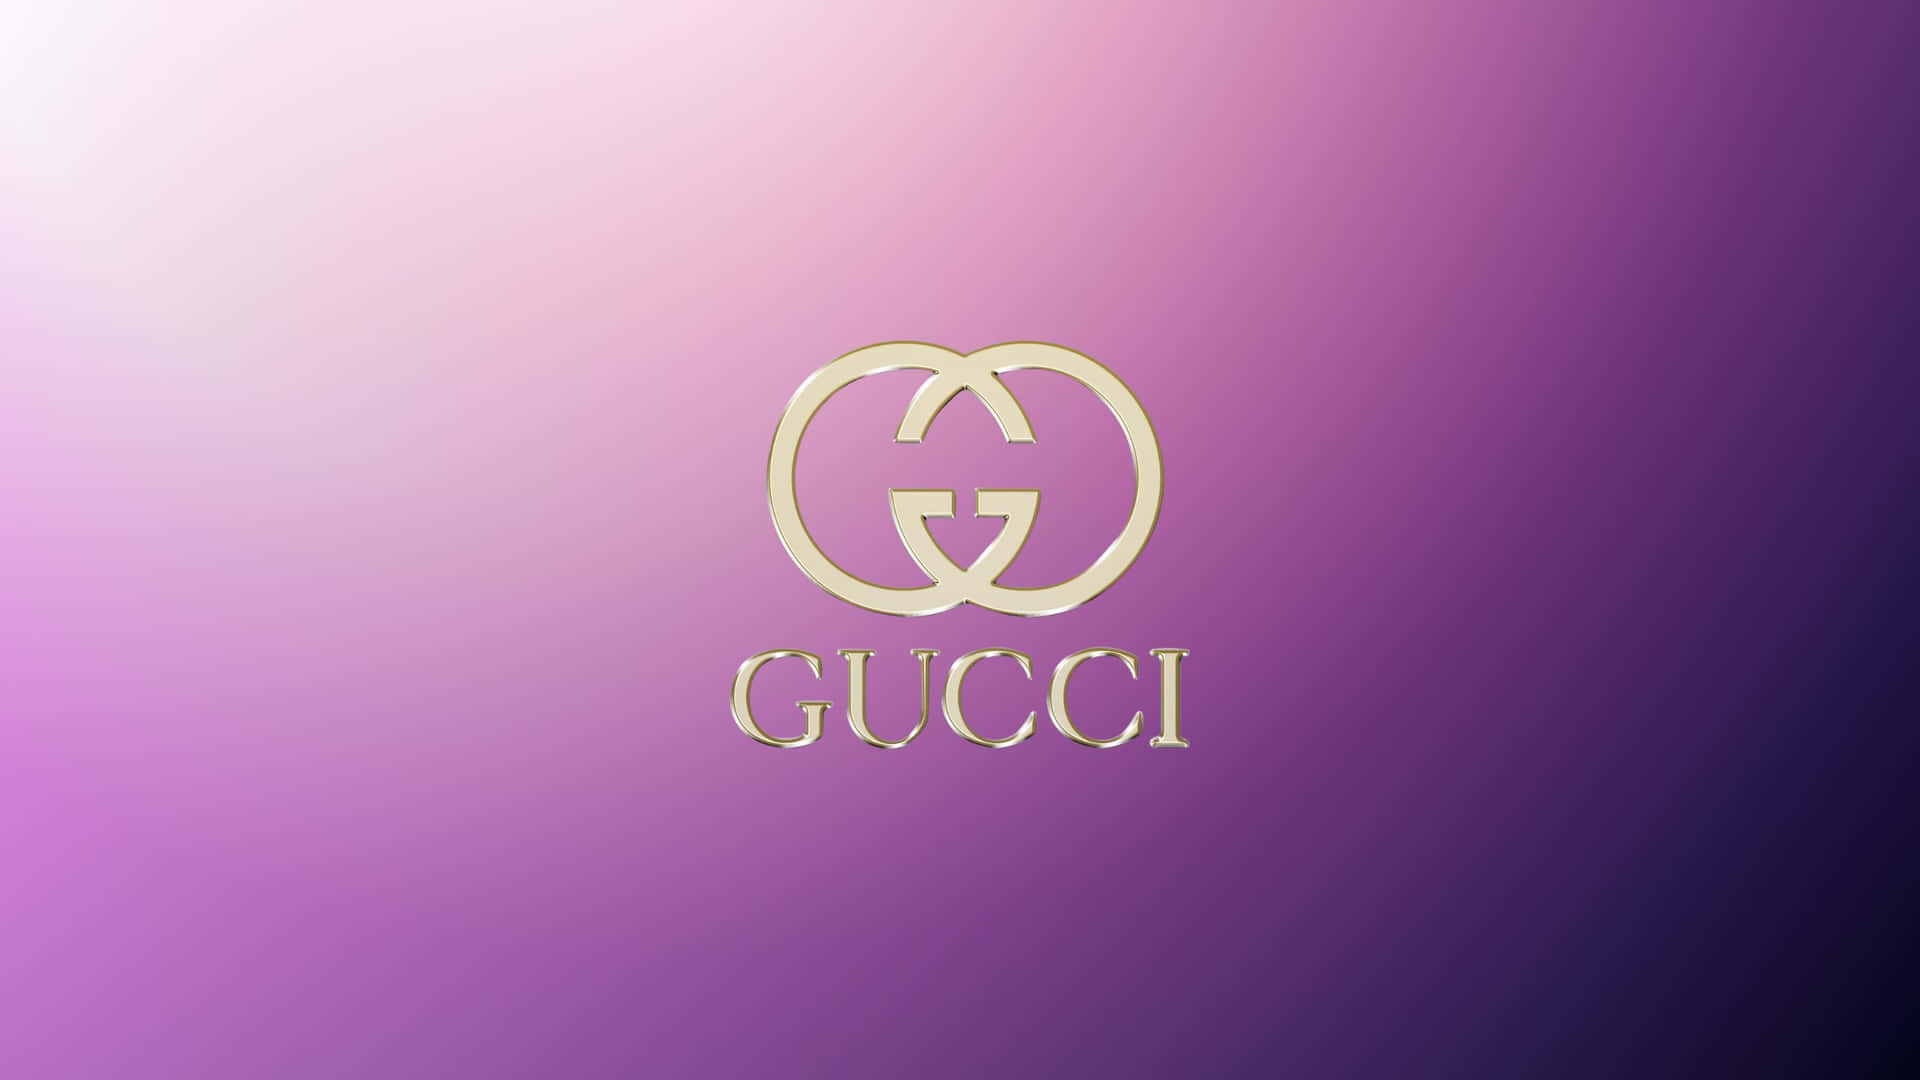 Se Luksuriøs med den lilla Gucci Collection. Wallpaper